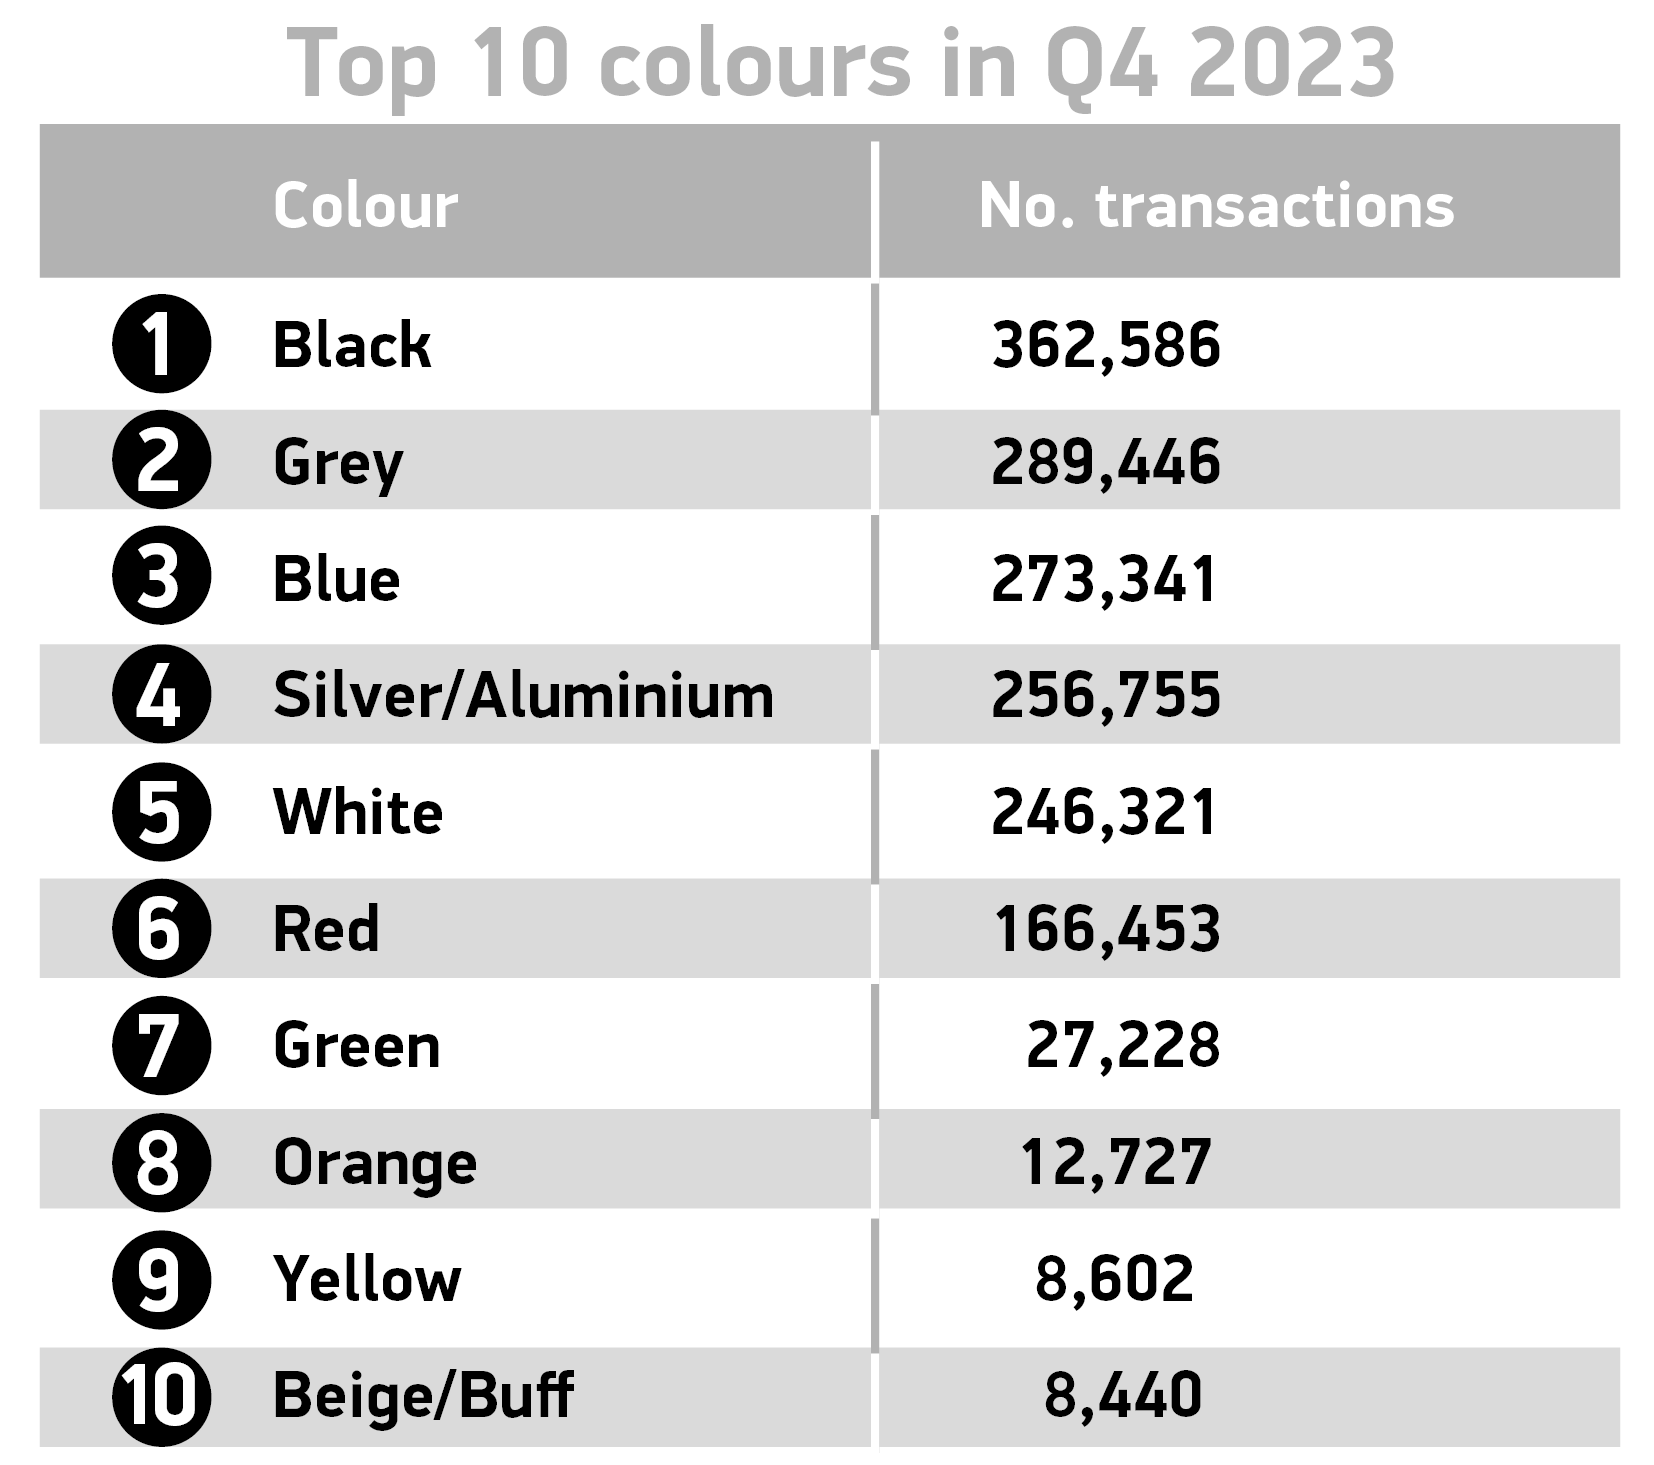 Top 10 colours Q4 2023